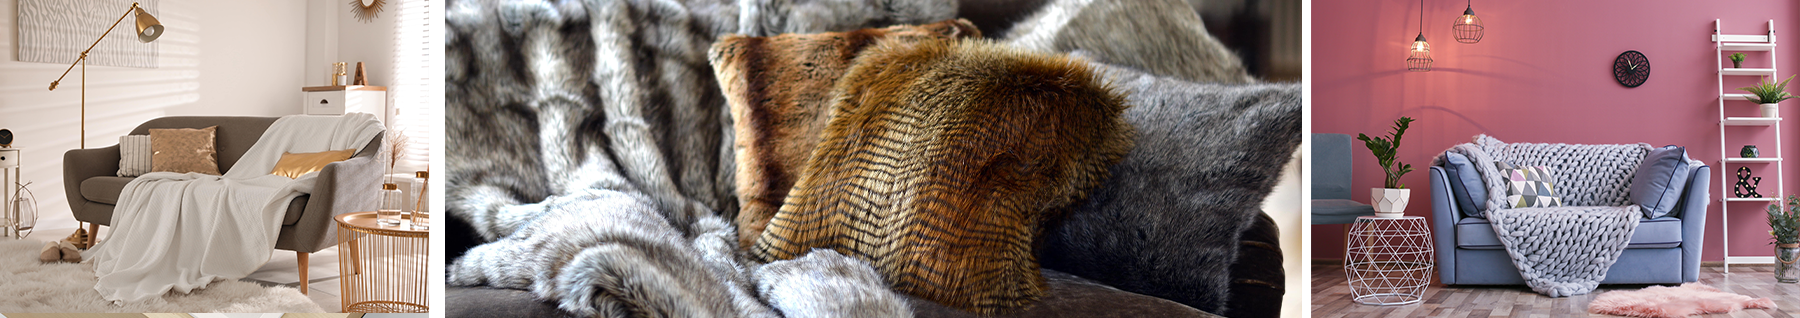 couverture laine maille cozy, couverture fourure et plaid sur canapé